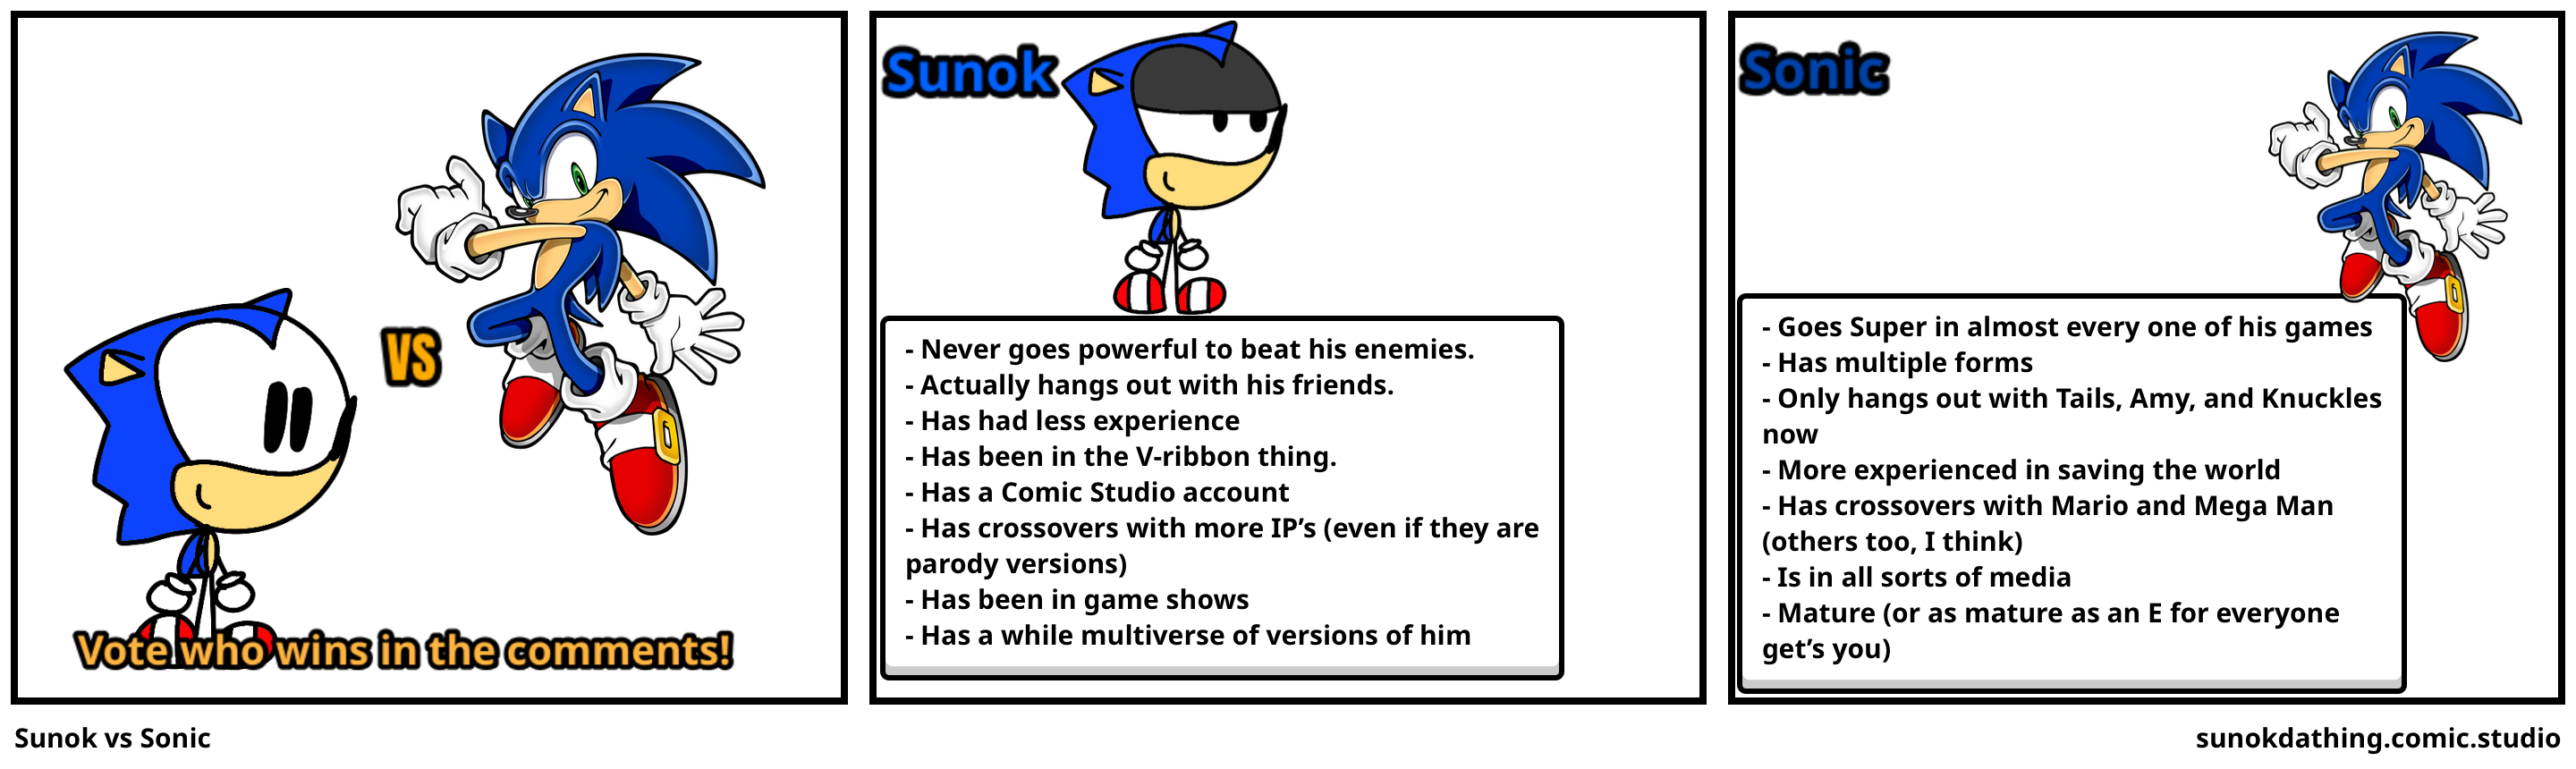 Sunok vs Sonic